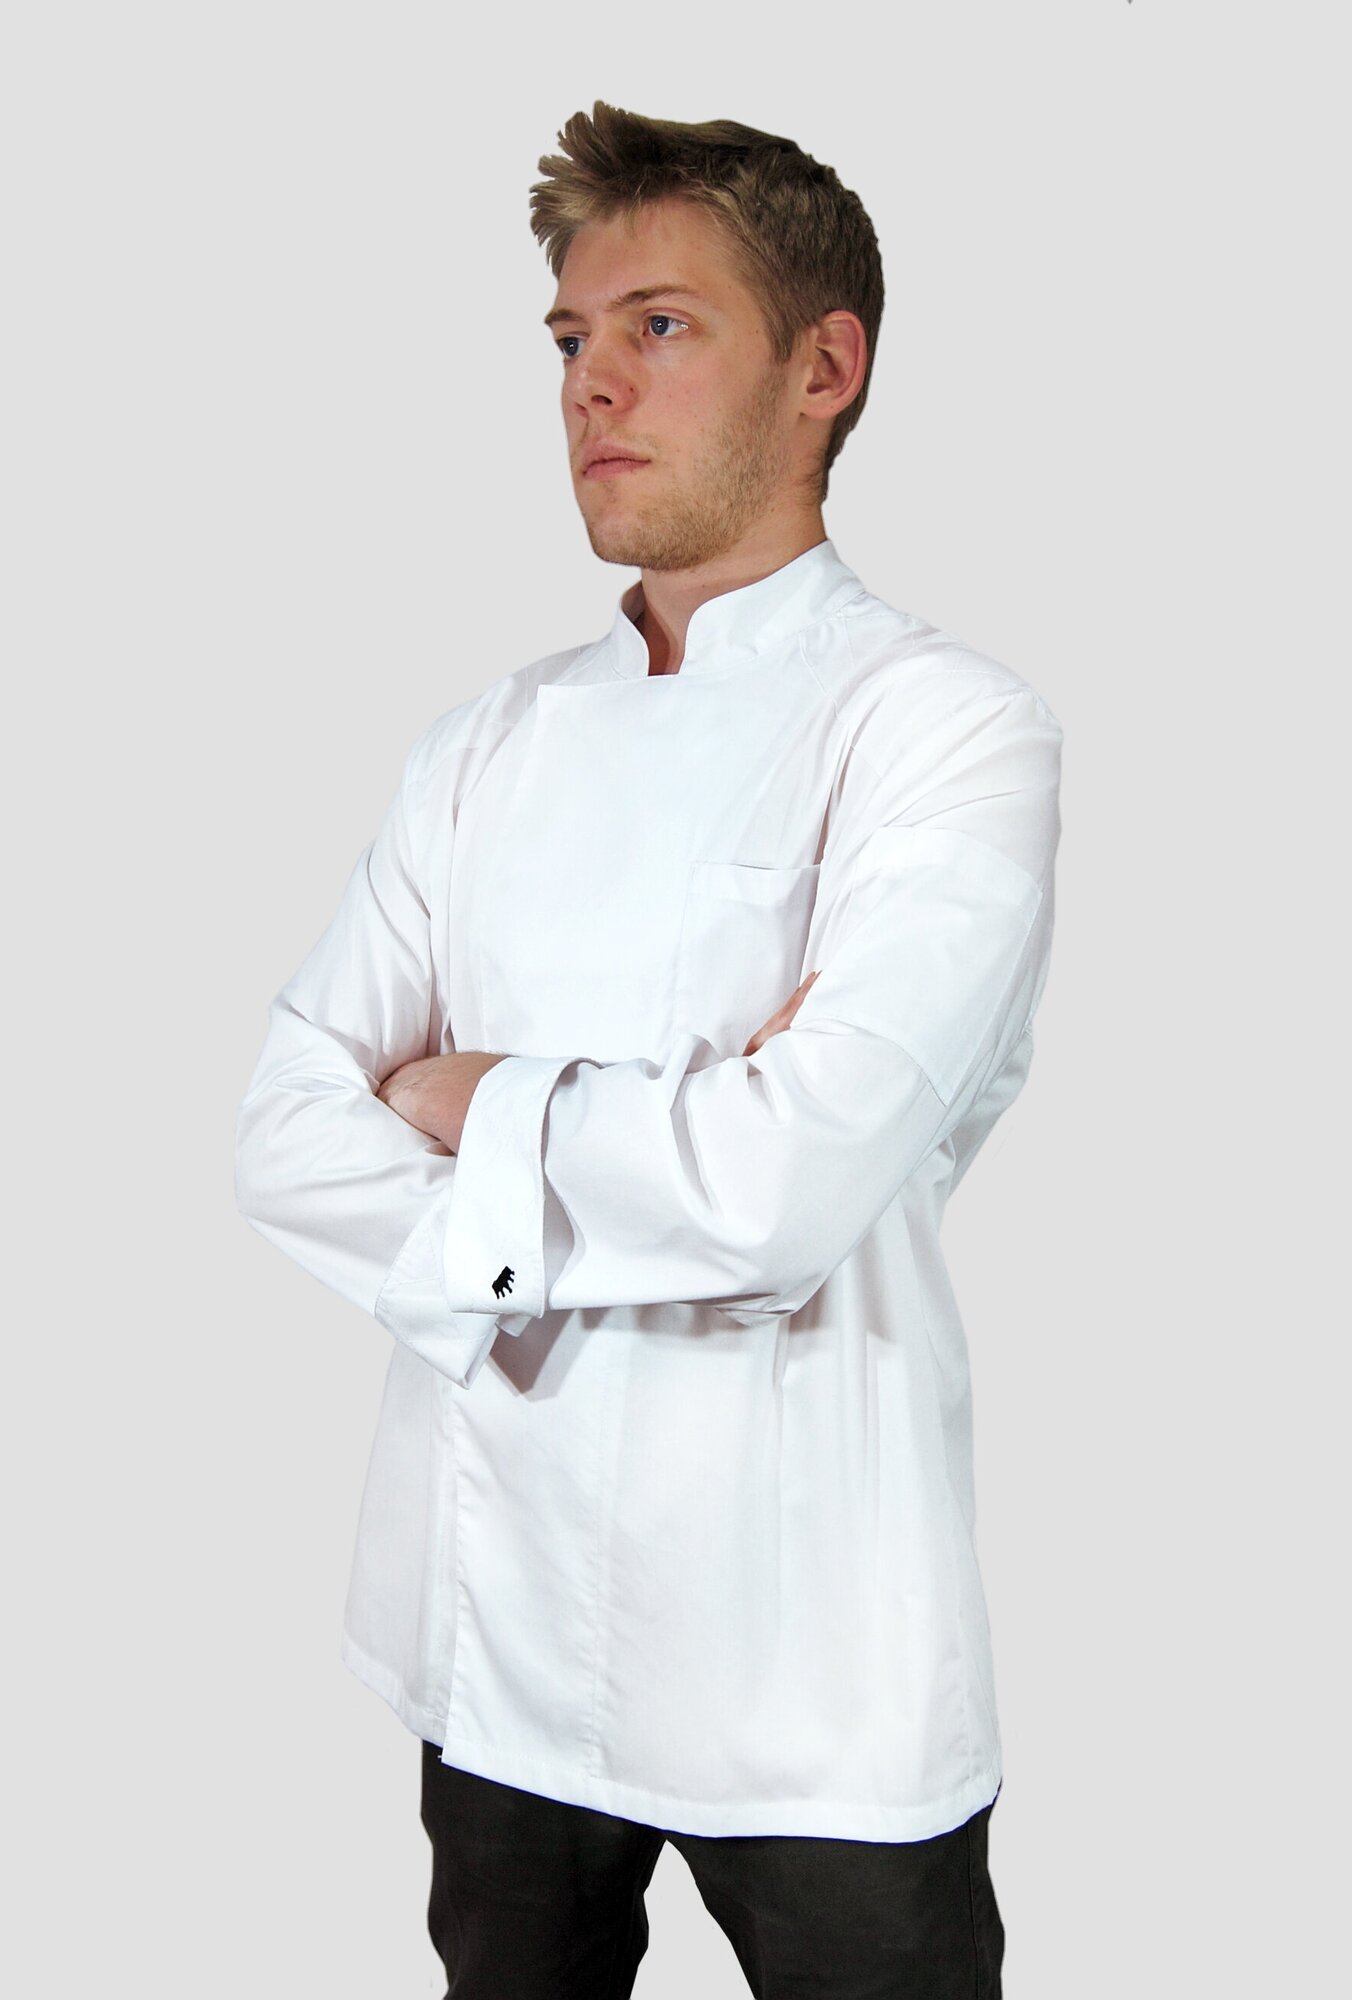 Китель мужской с вышивкой MASTER CHEF белый/размер 50/поварская одежда/униформа/куртка поварская